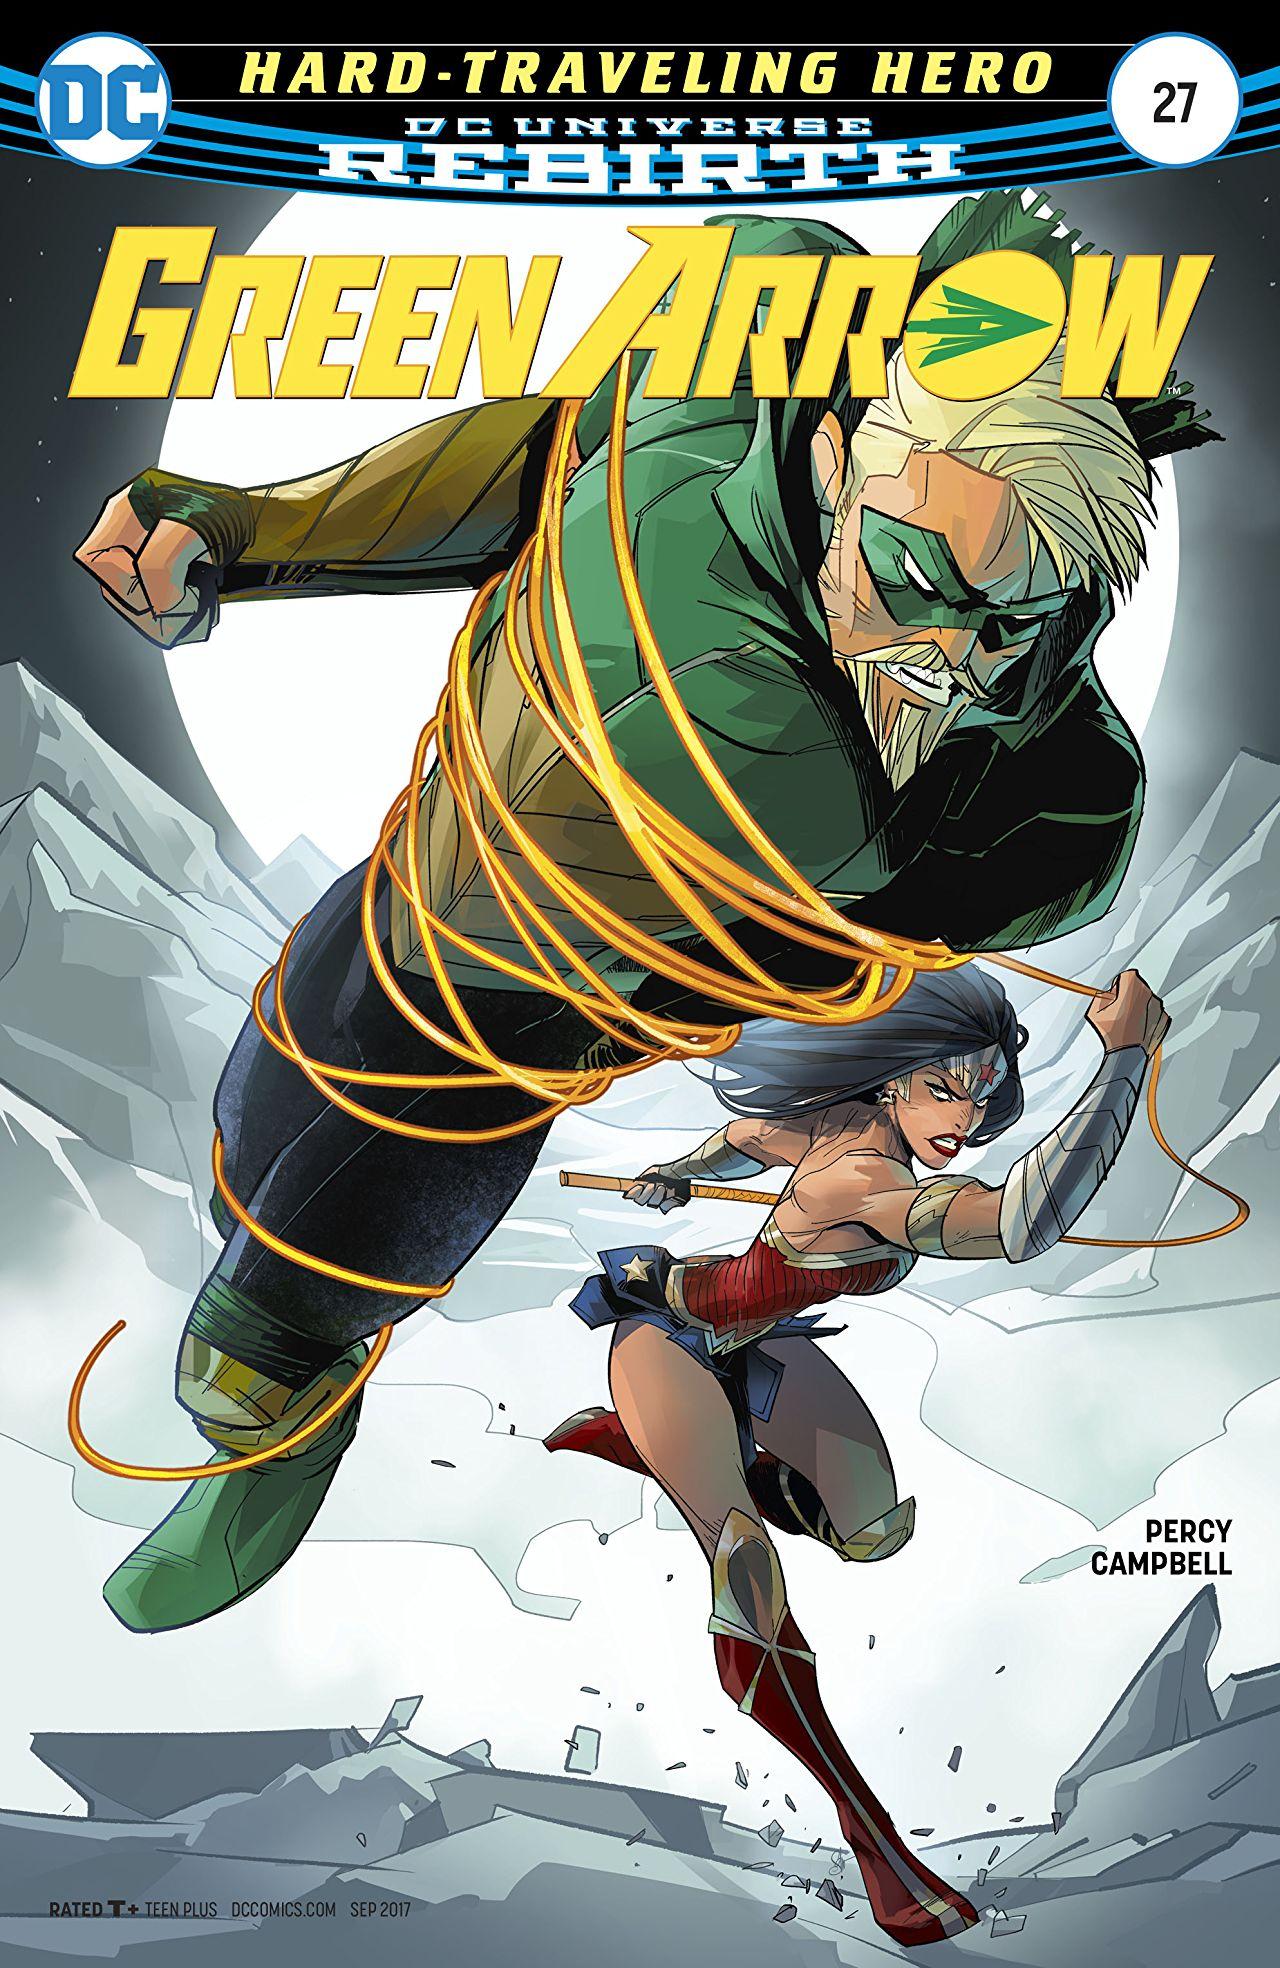 Green Arrow Vol. 6 #27